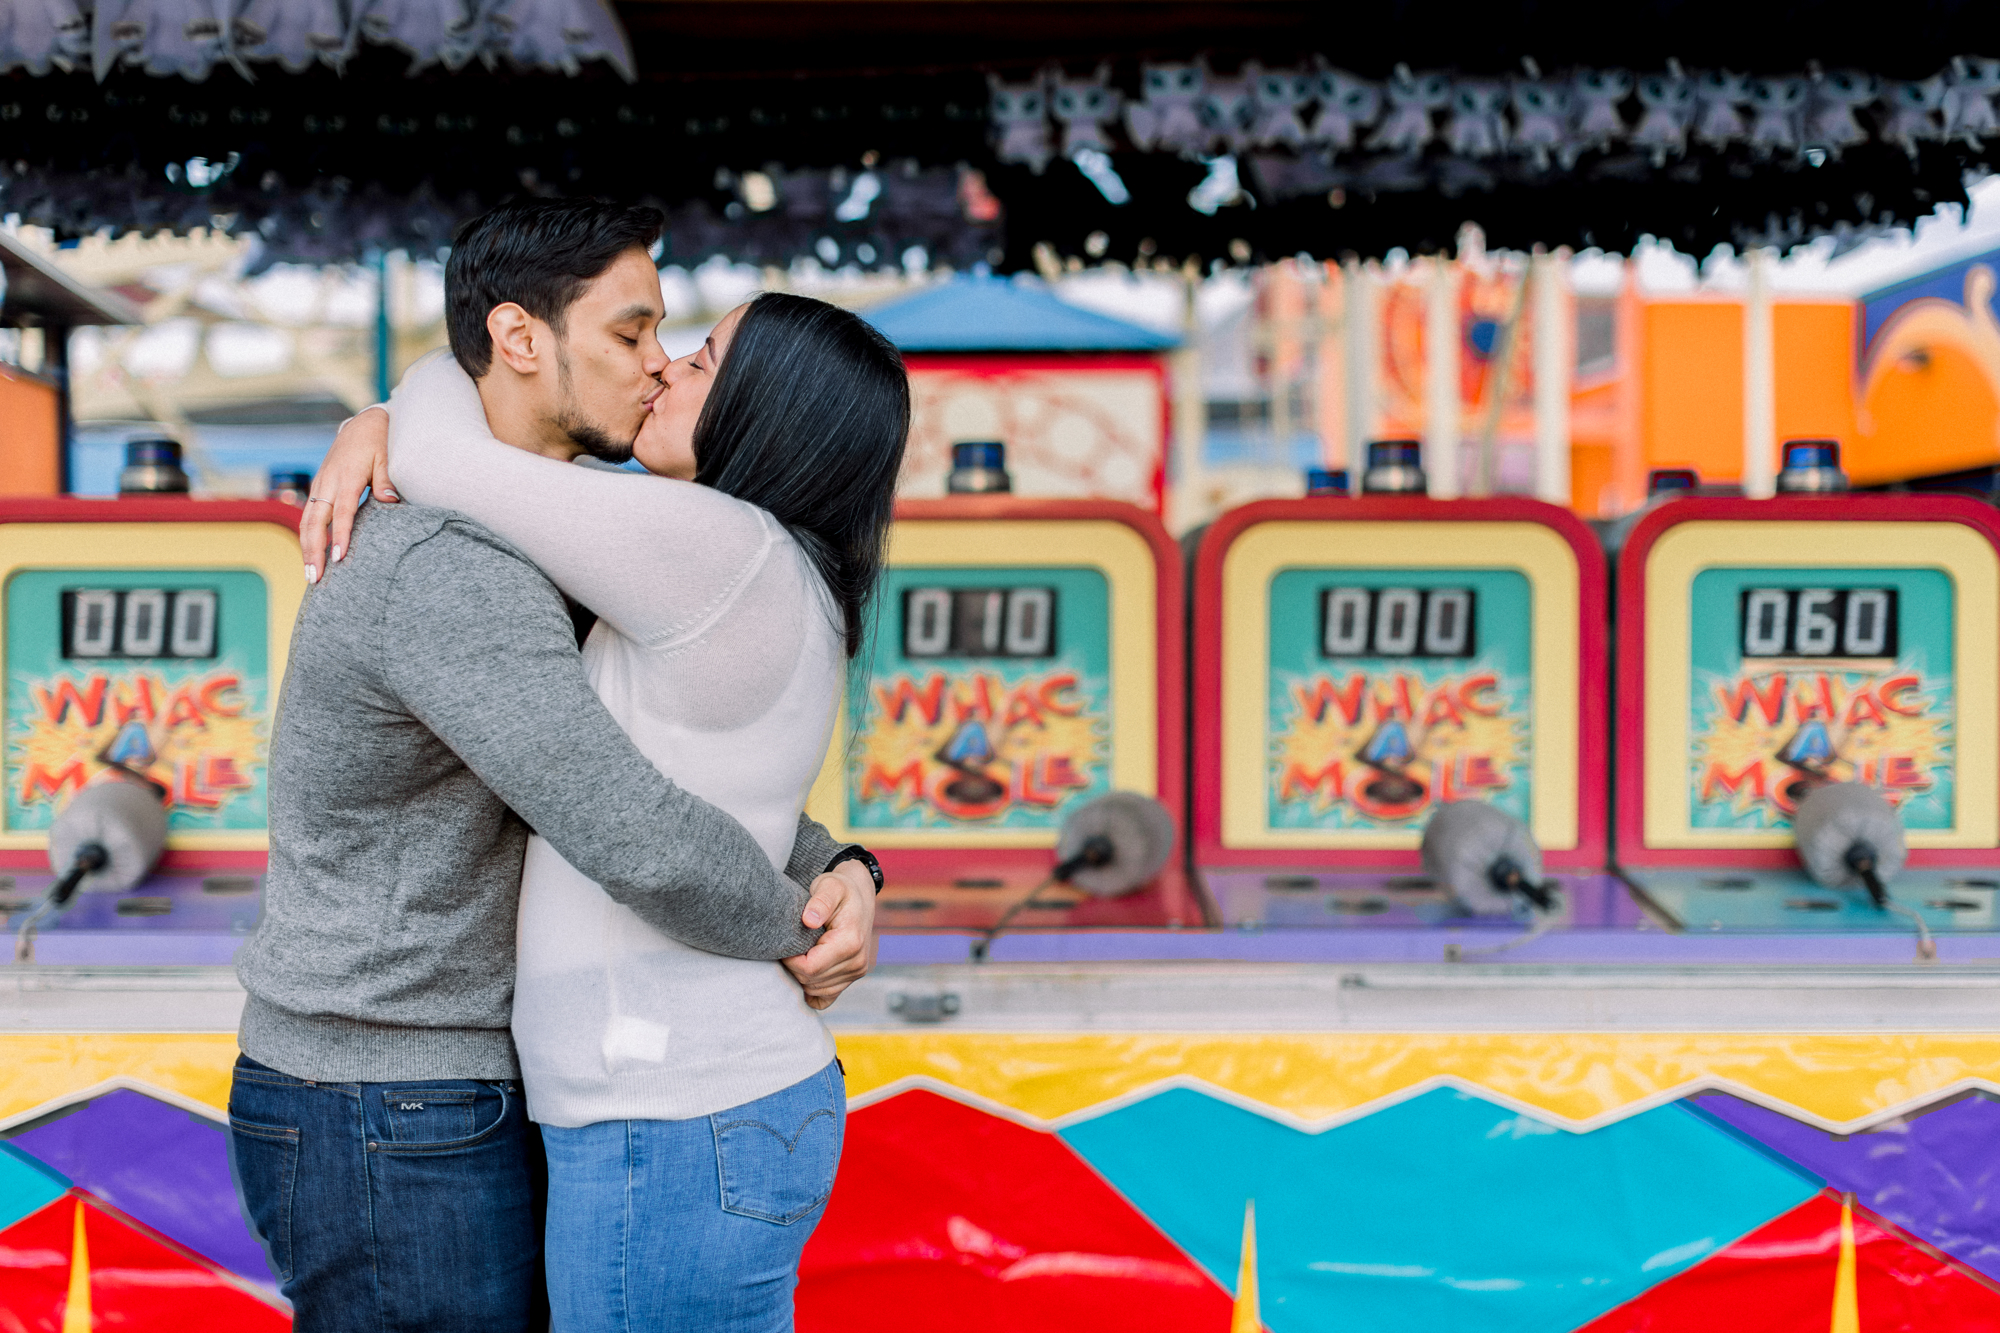 Striking Coney Island Engagement Photos in Luna Park